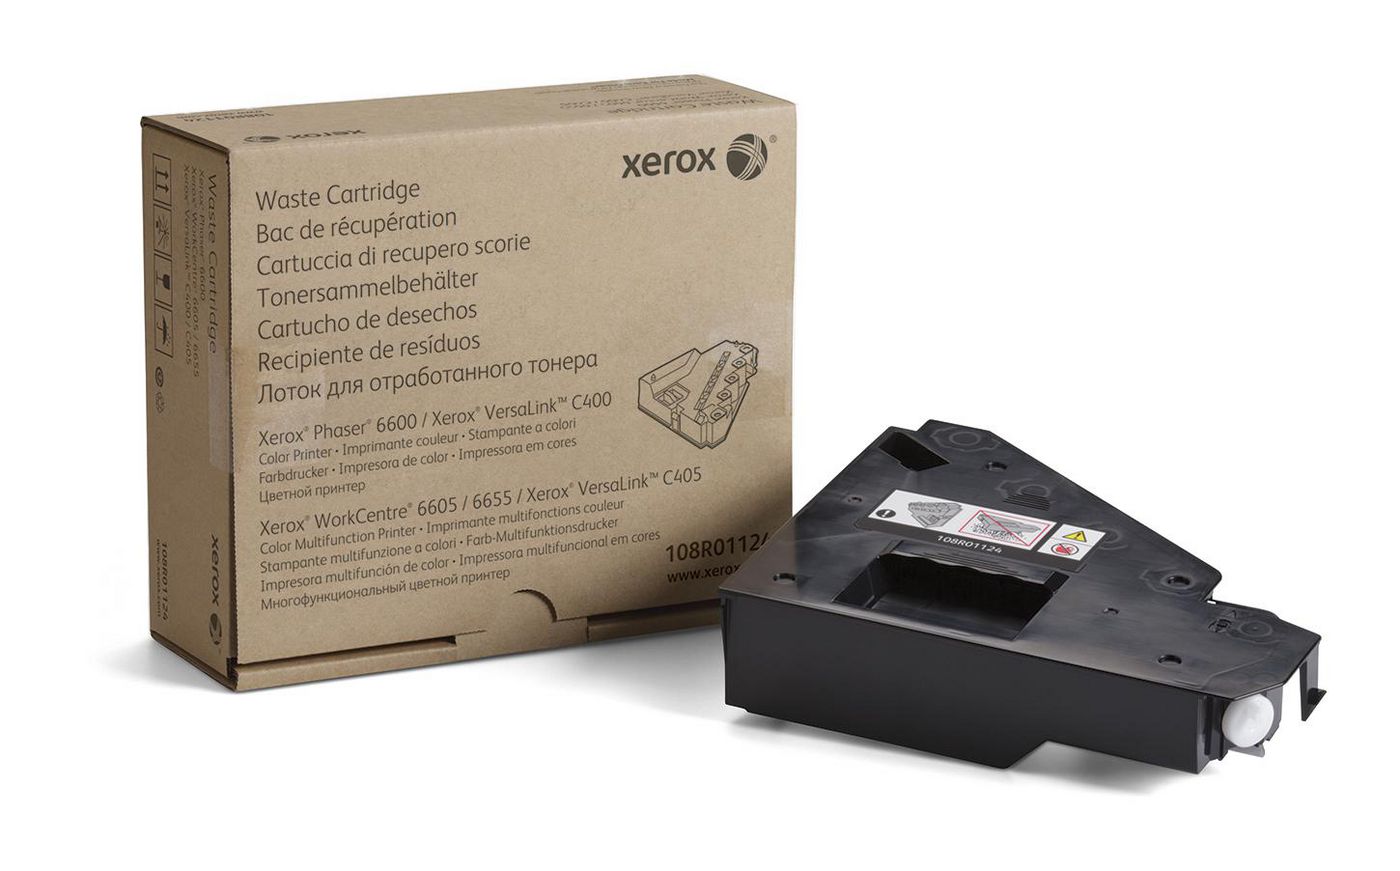 XEROX VersaLink C400 Tonersammler